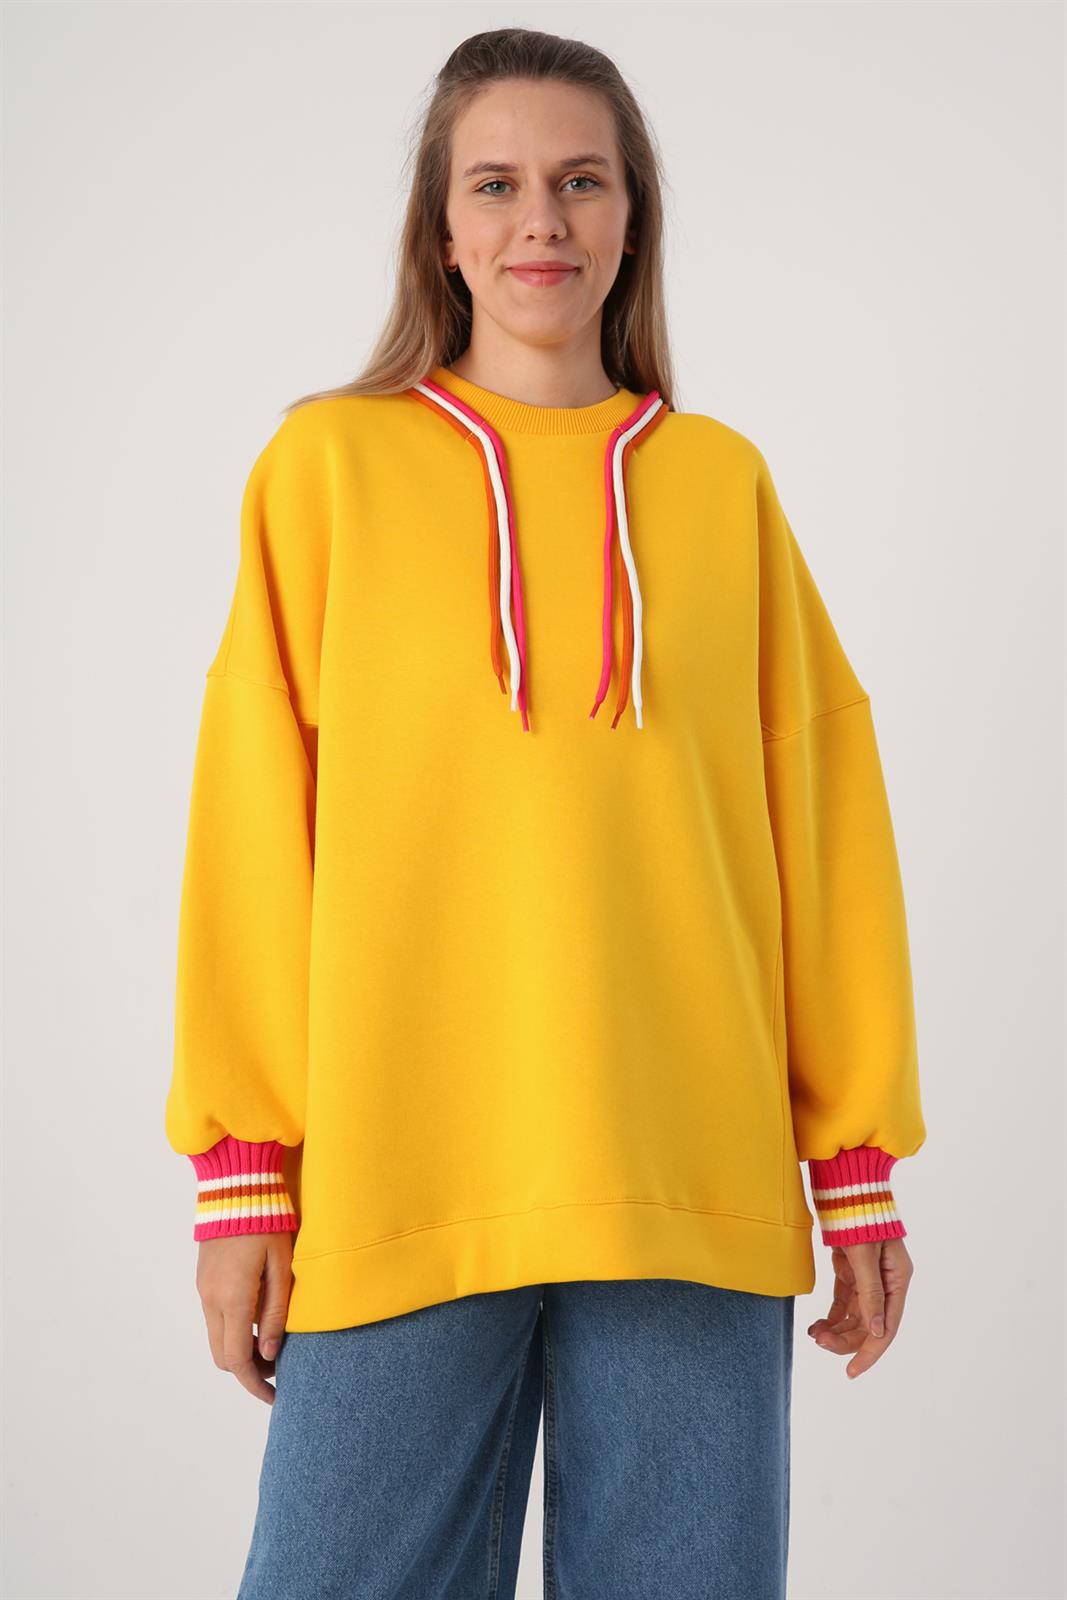 Allday Koyu Sarı Oversize 3 Renk Kordonlu Triko Bantlı Sweatshirt